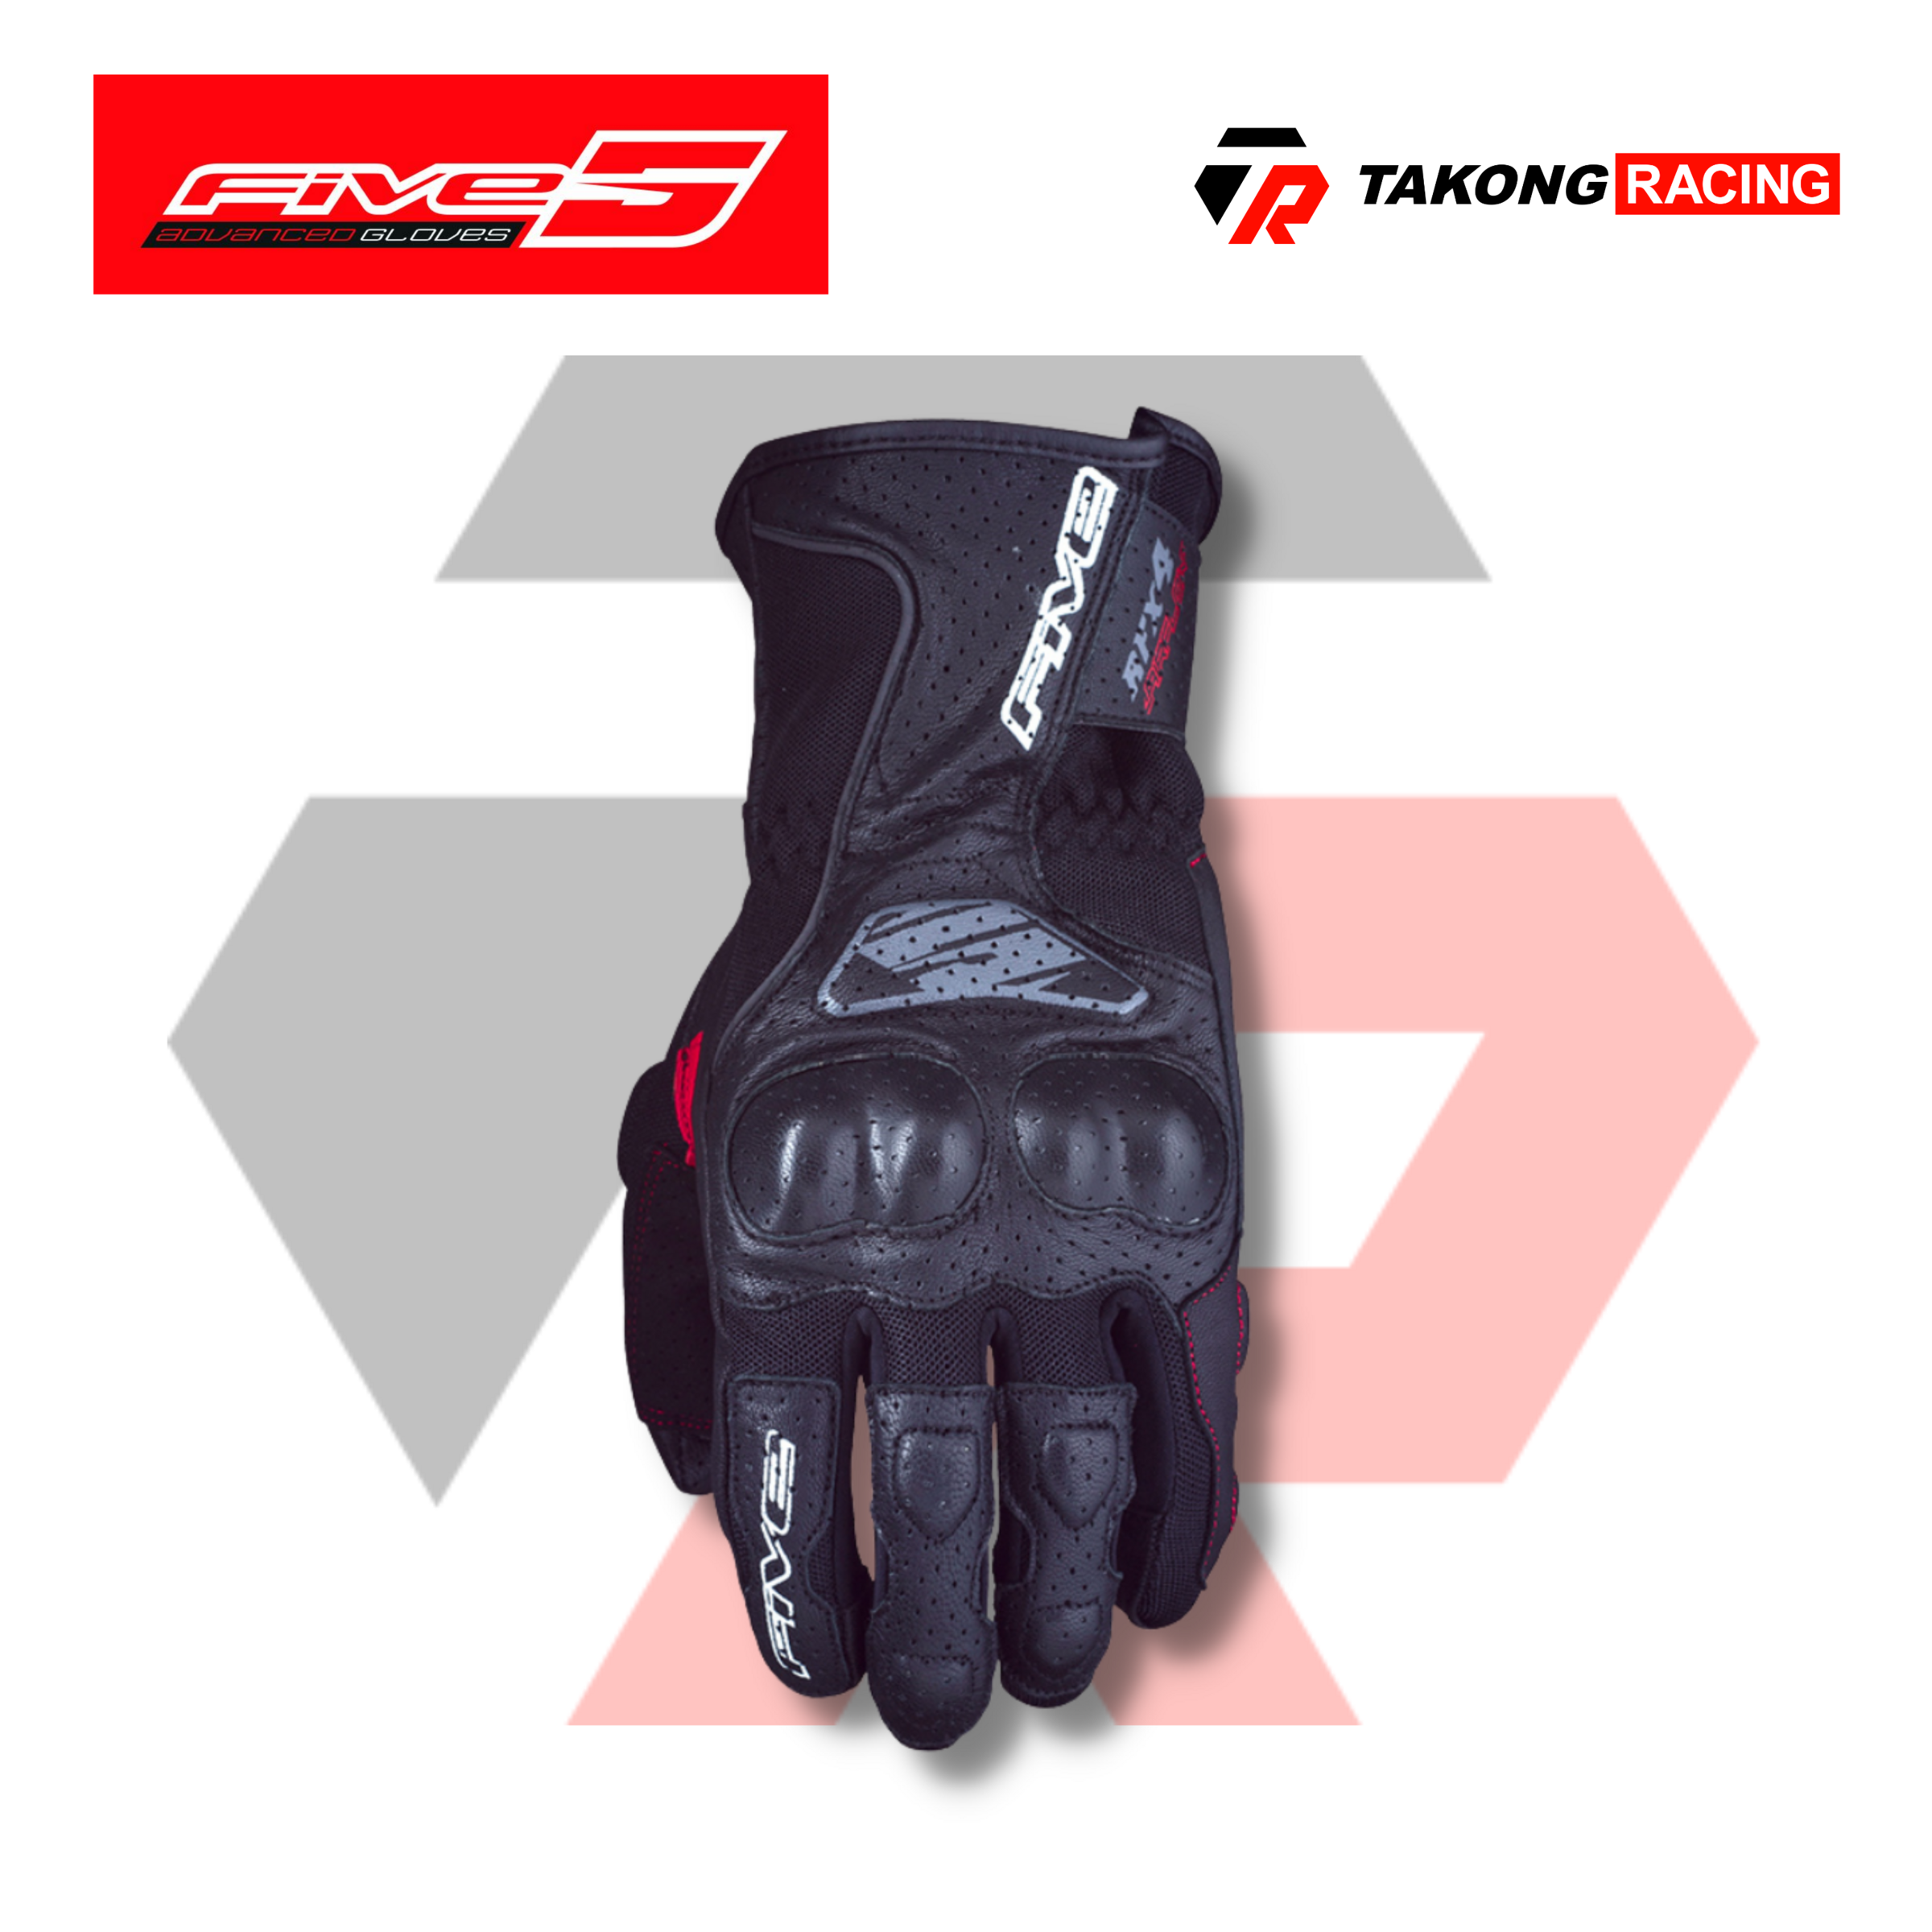 Five5 RFX4 Airflow Riding Glove – Takong Racing (Riding Apparel)